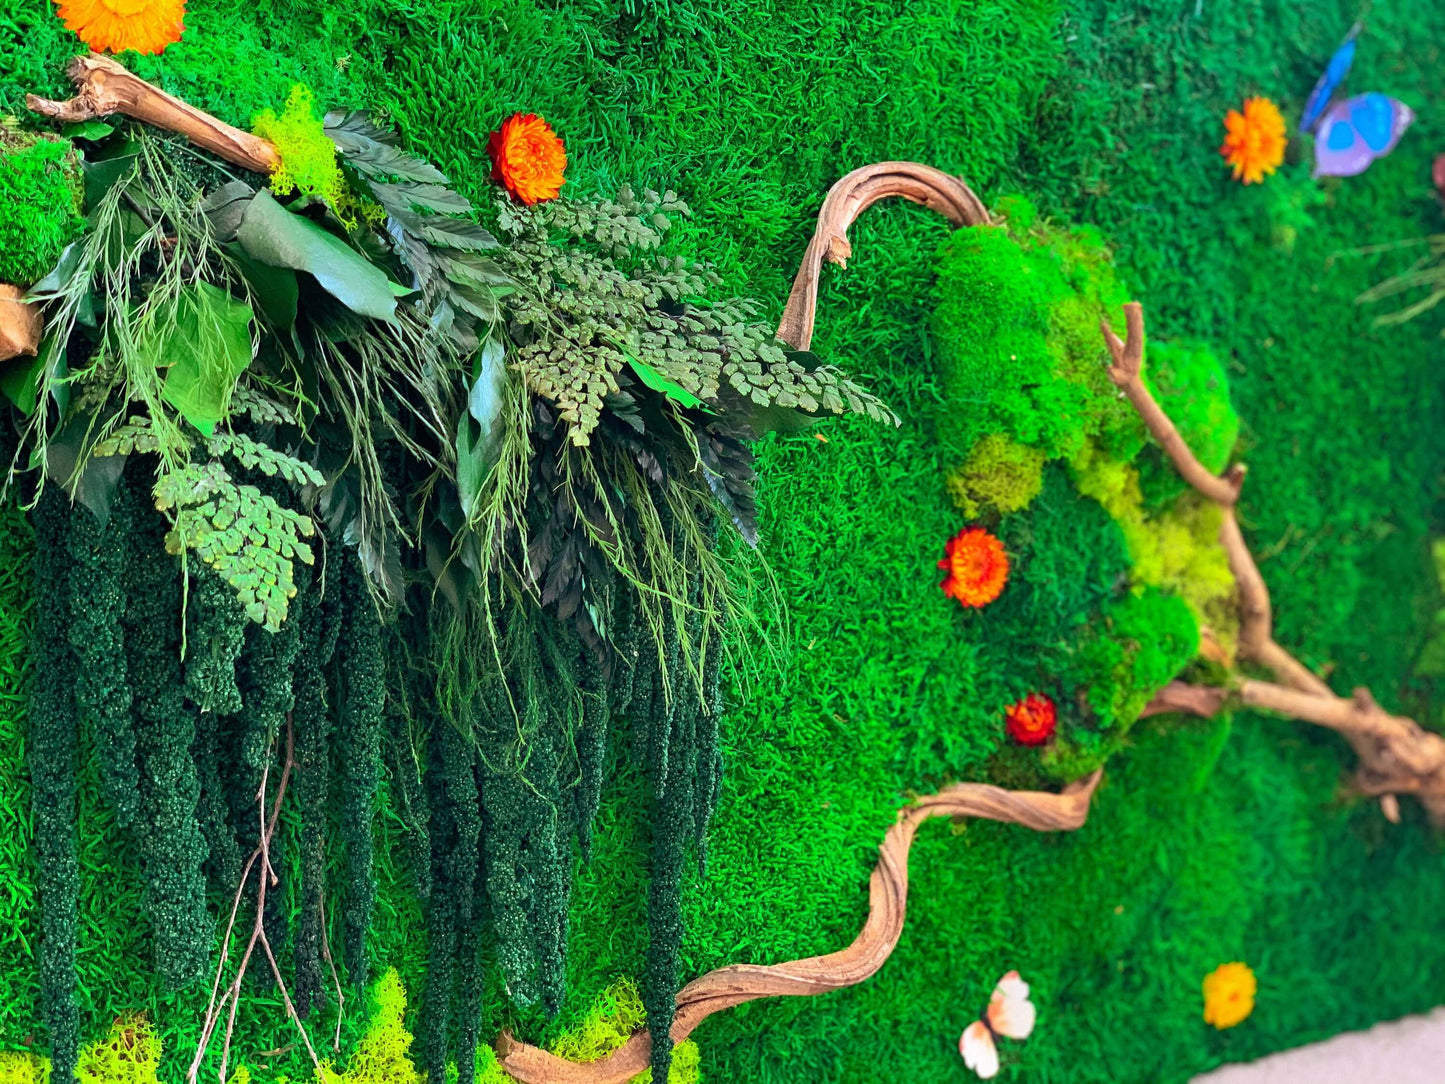 Moss Wall | Preserved Moss art | Living wall art Set RishStudio